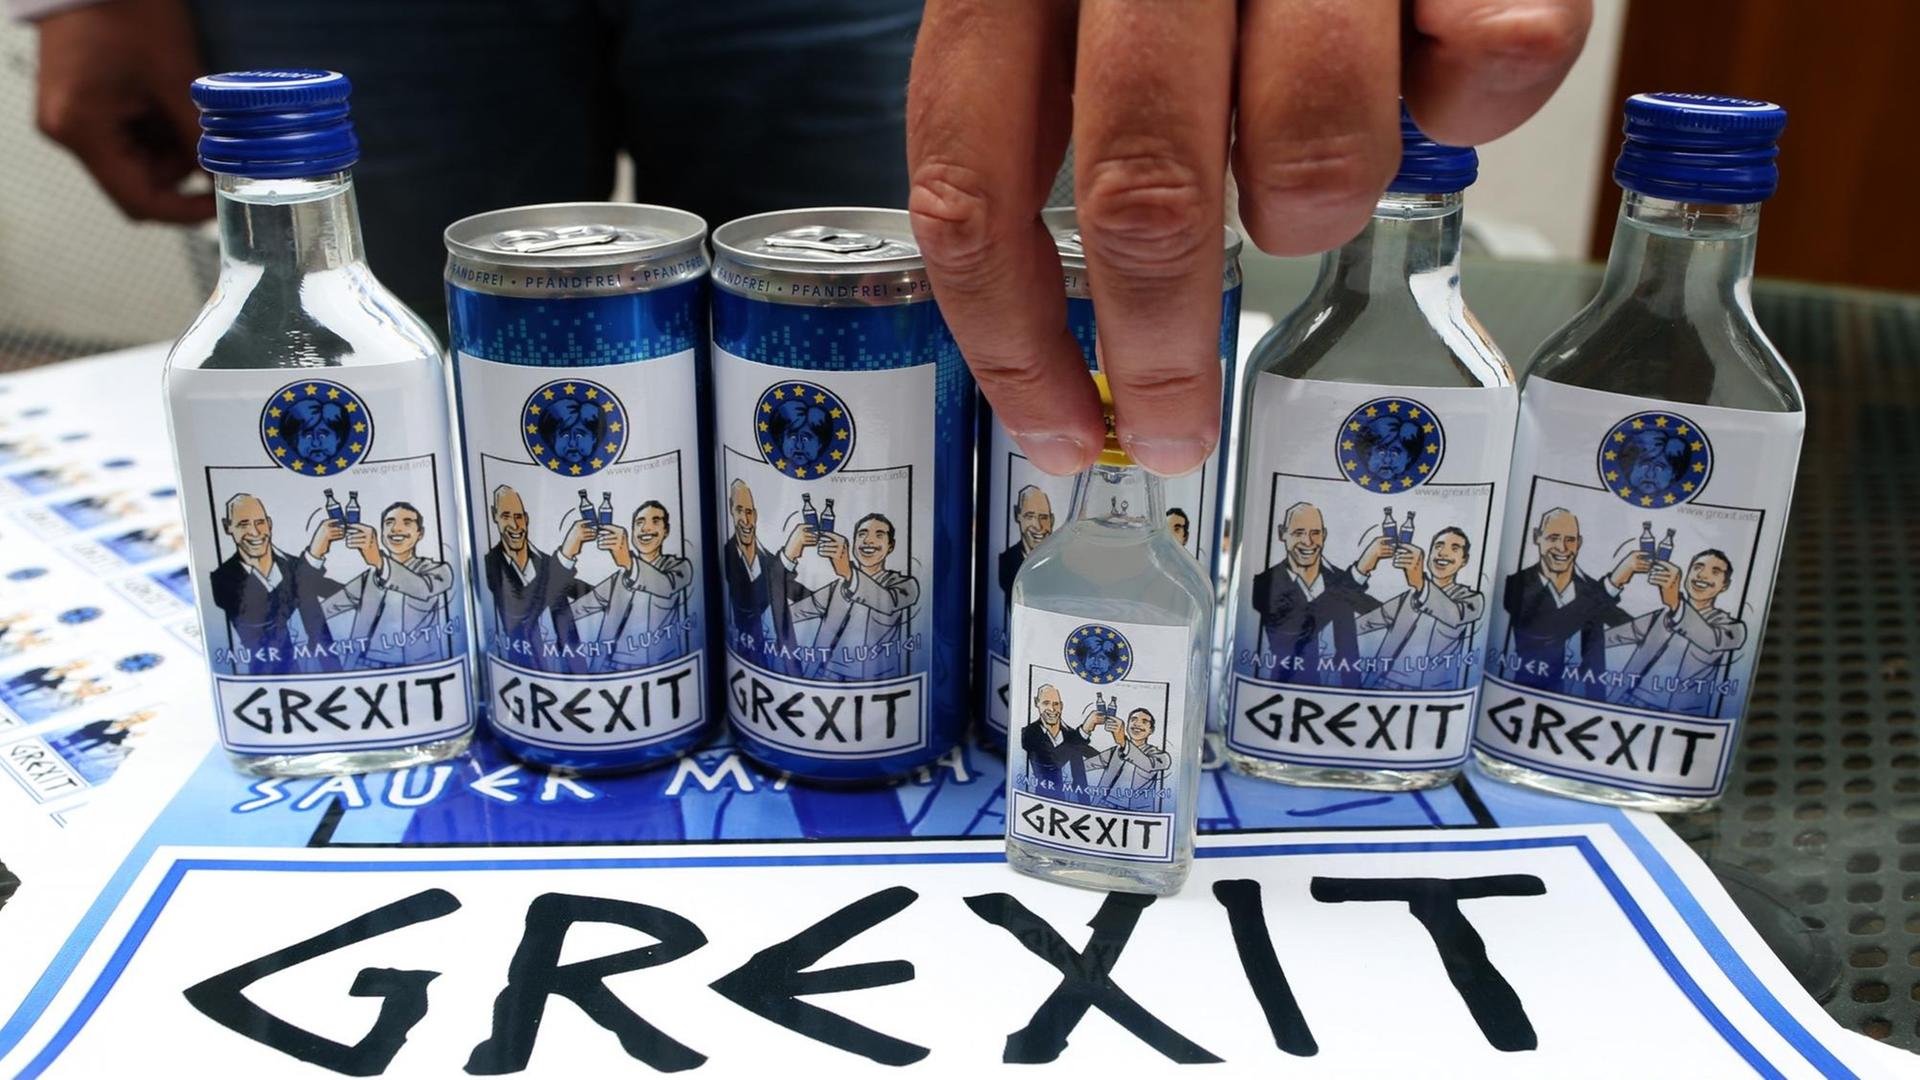 Auf einem Tisch stehen mehrere Flaschen und Dosen, auf den Etiketten stoßen Politiker an, darunter das Wort "Grexit".